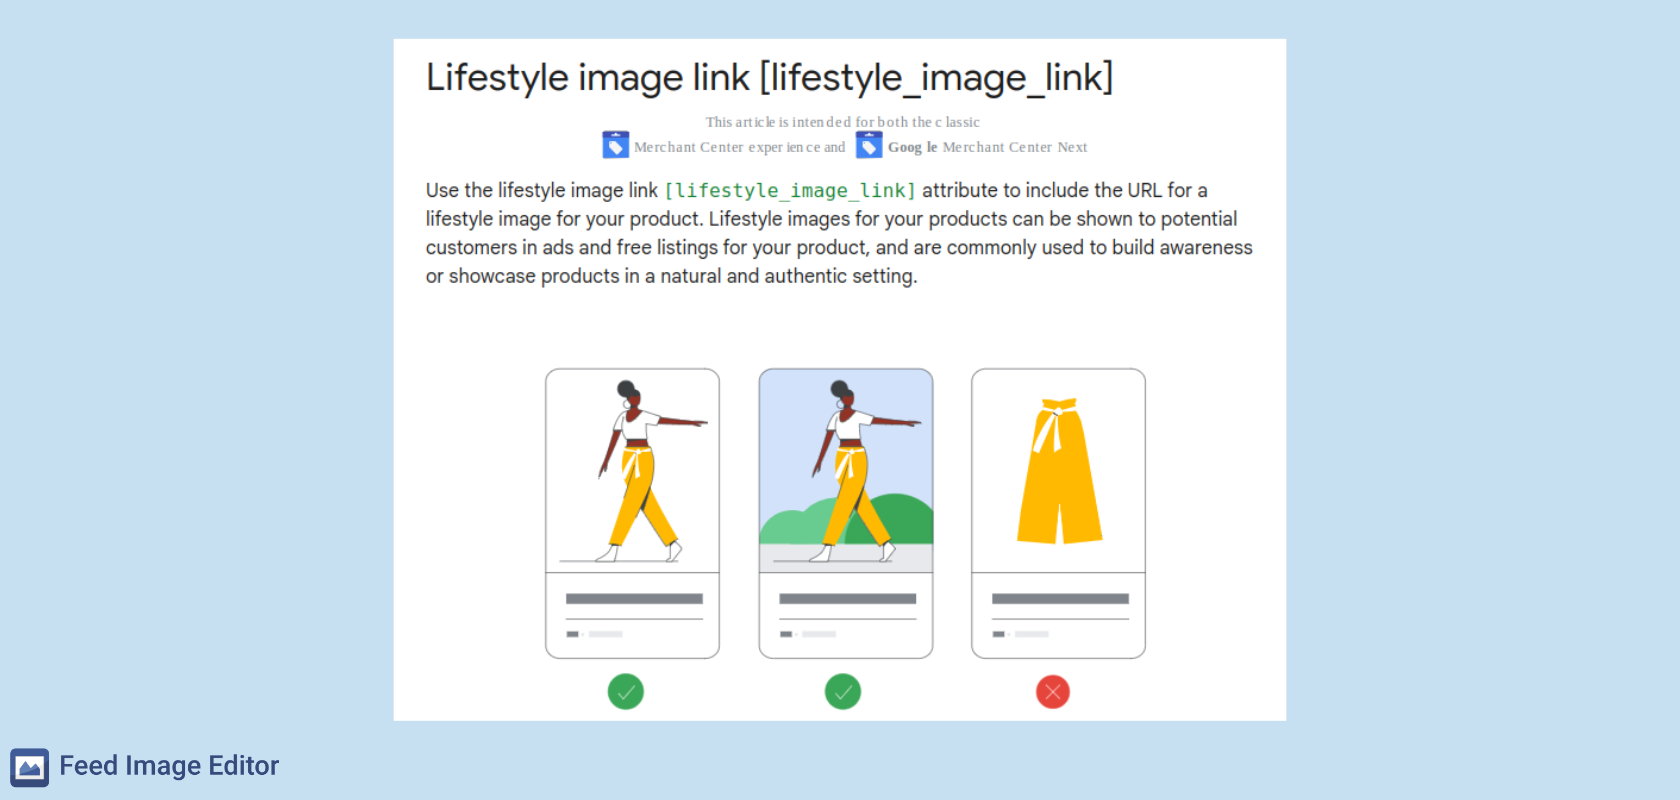 google_lifestyle_image_link_product_photo_shopping